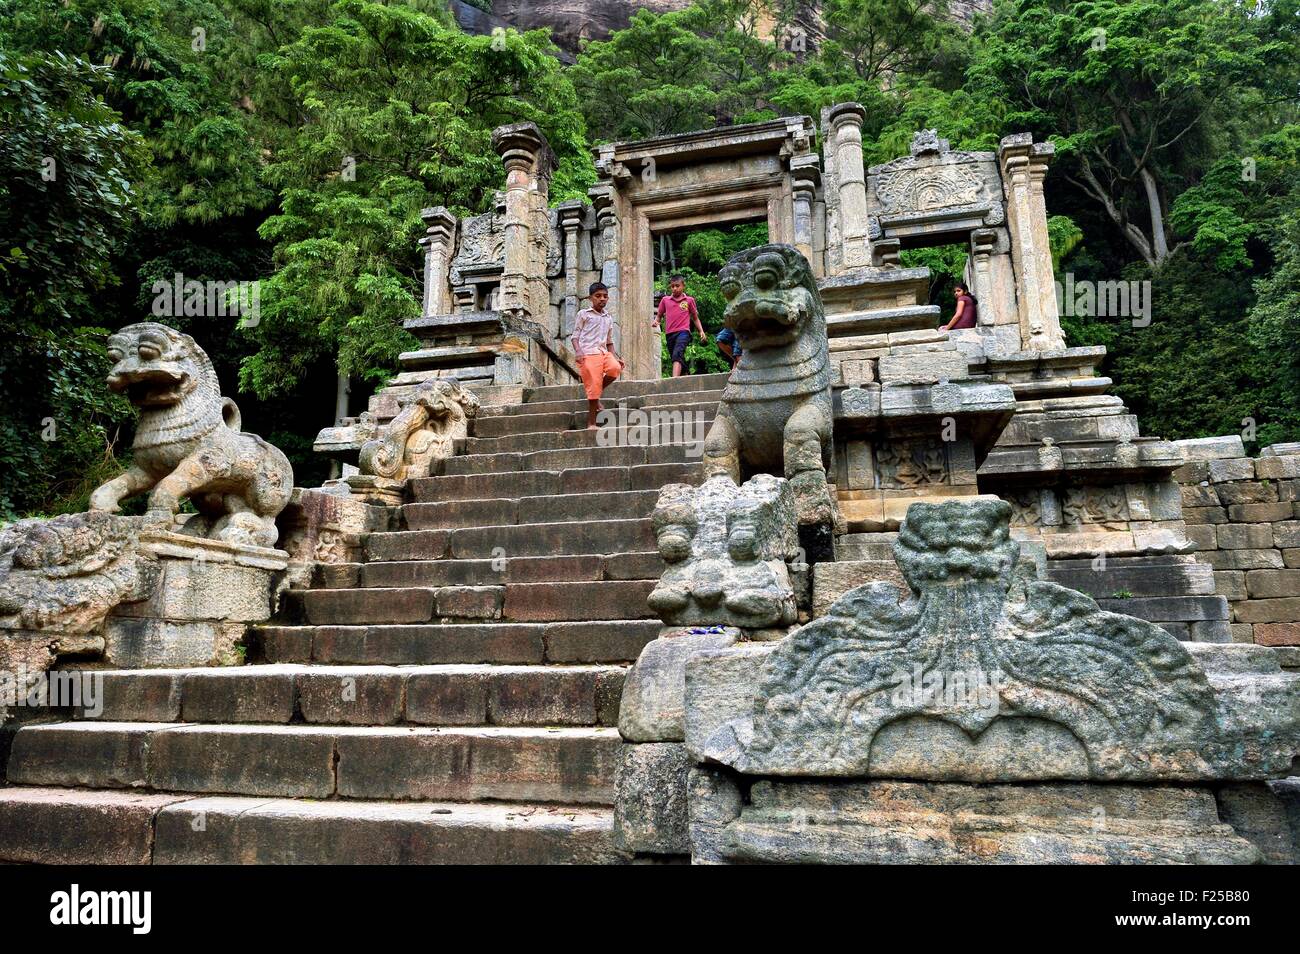 Sri Lanka, Nord provincia occidentale, la cittadella di Yapahuwa scalinata, effimero capitale del paese nel secolo13th, Lion scultura in pietra Foto Stock